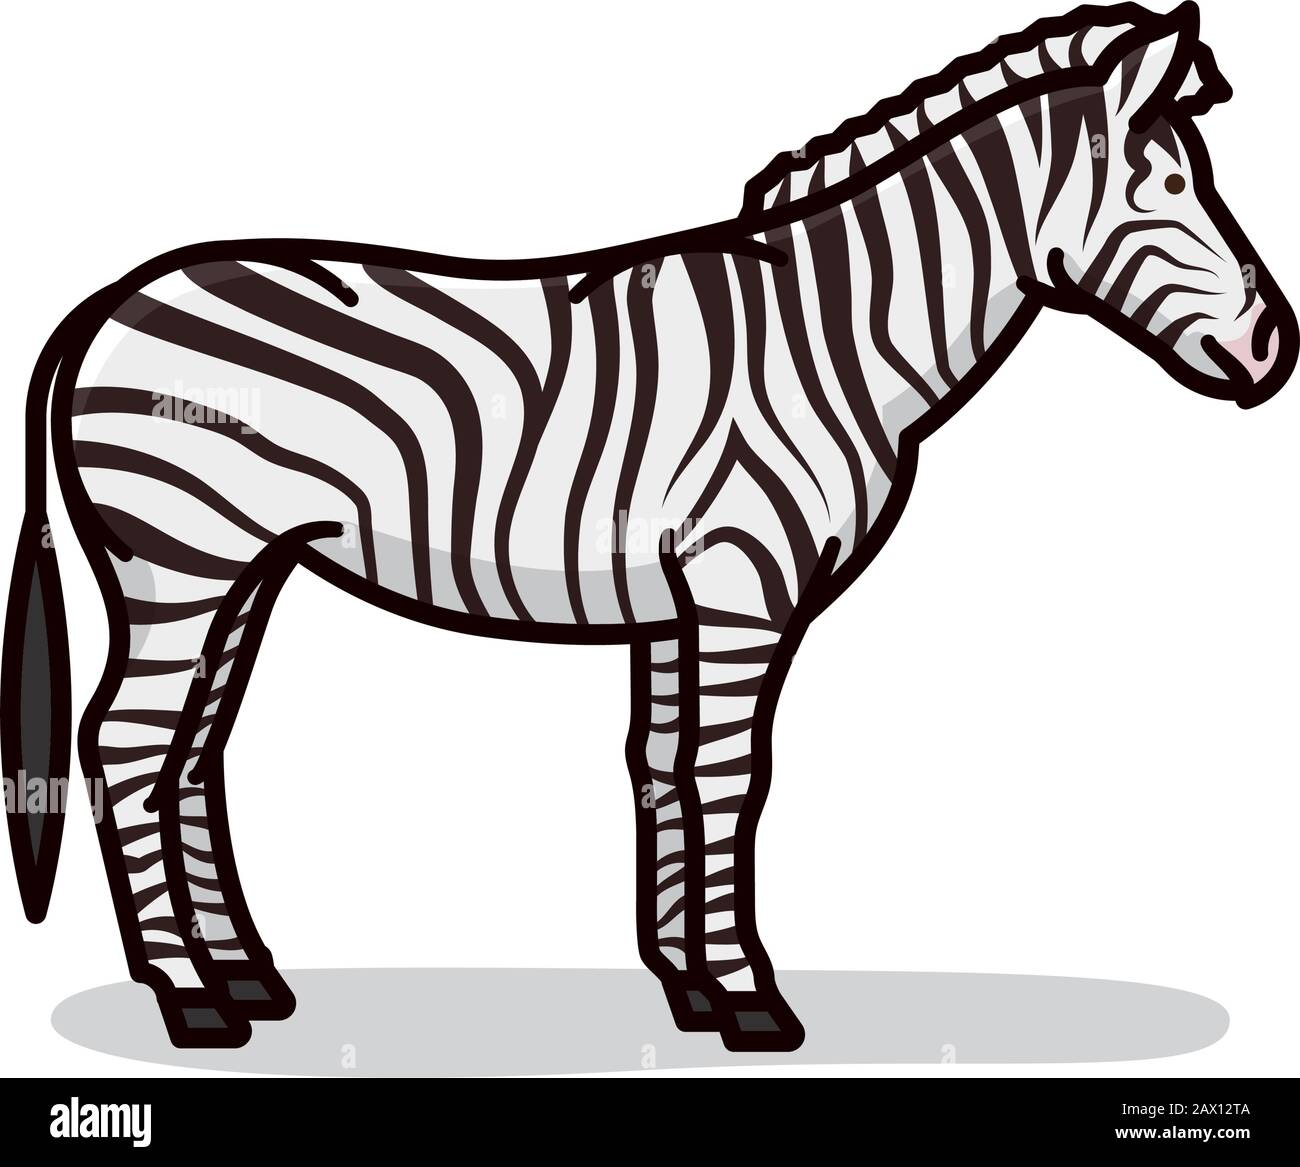 Cartoon Zebra isolierte Vektorgrafiken. Symbol für afrikanische Tierwelt und Tarnmuster. Stock Vektor